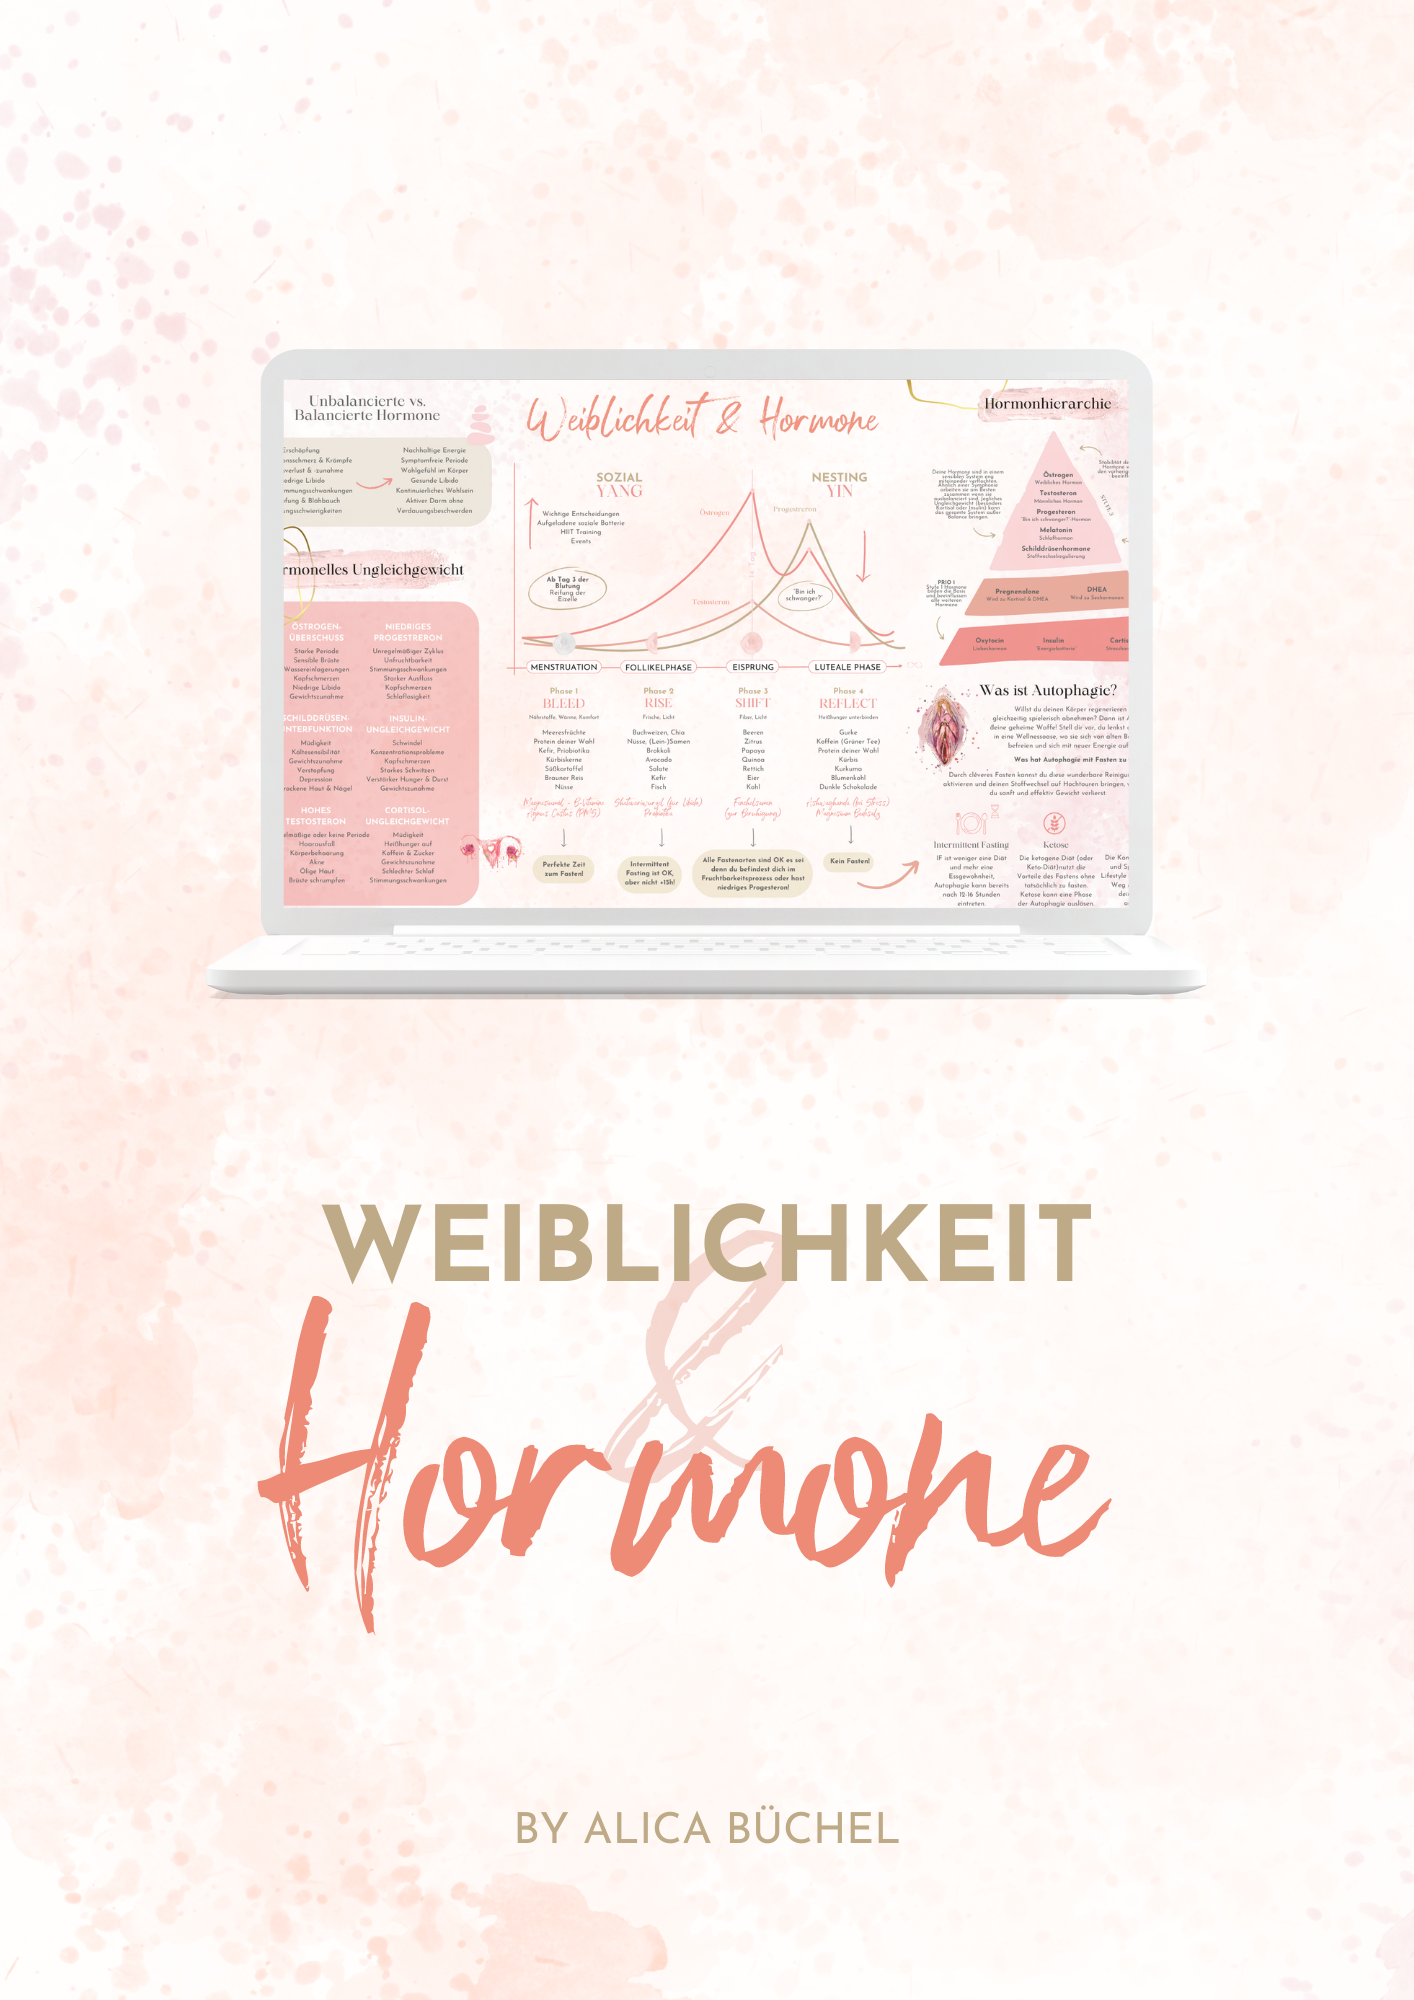 Weiblichkeit & Hormone - Dein Cheat Sheet von Alica Büchel